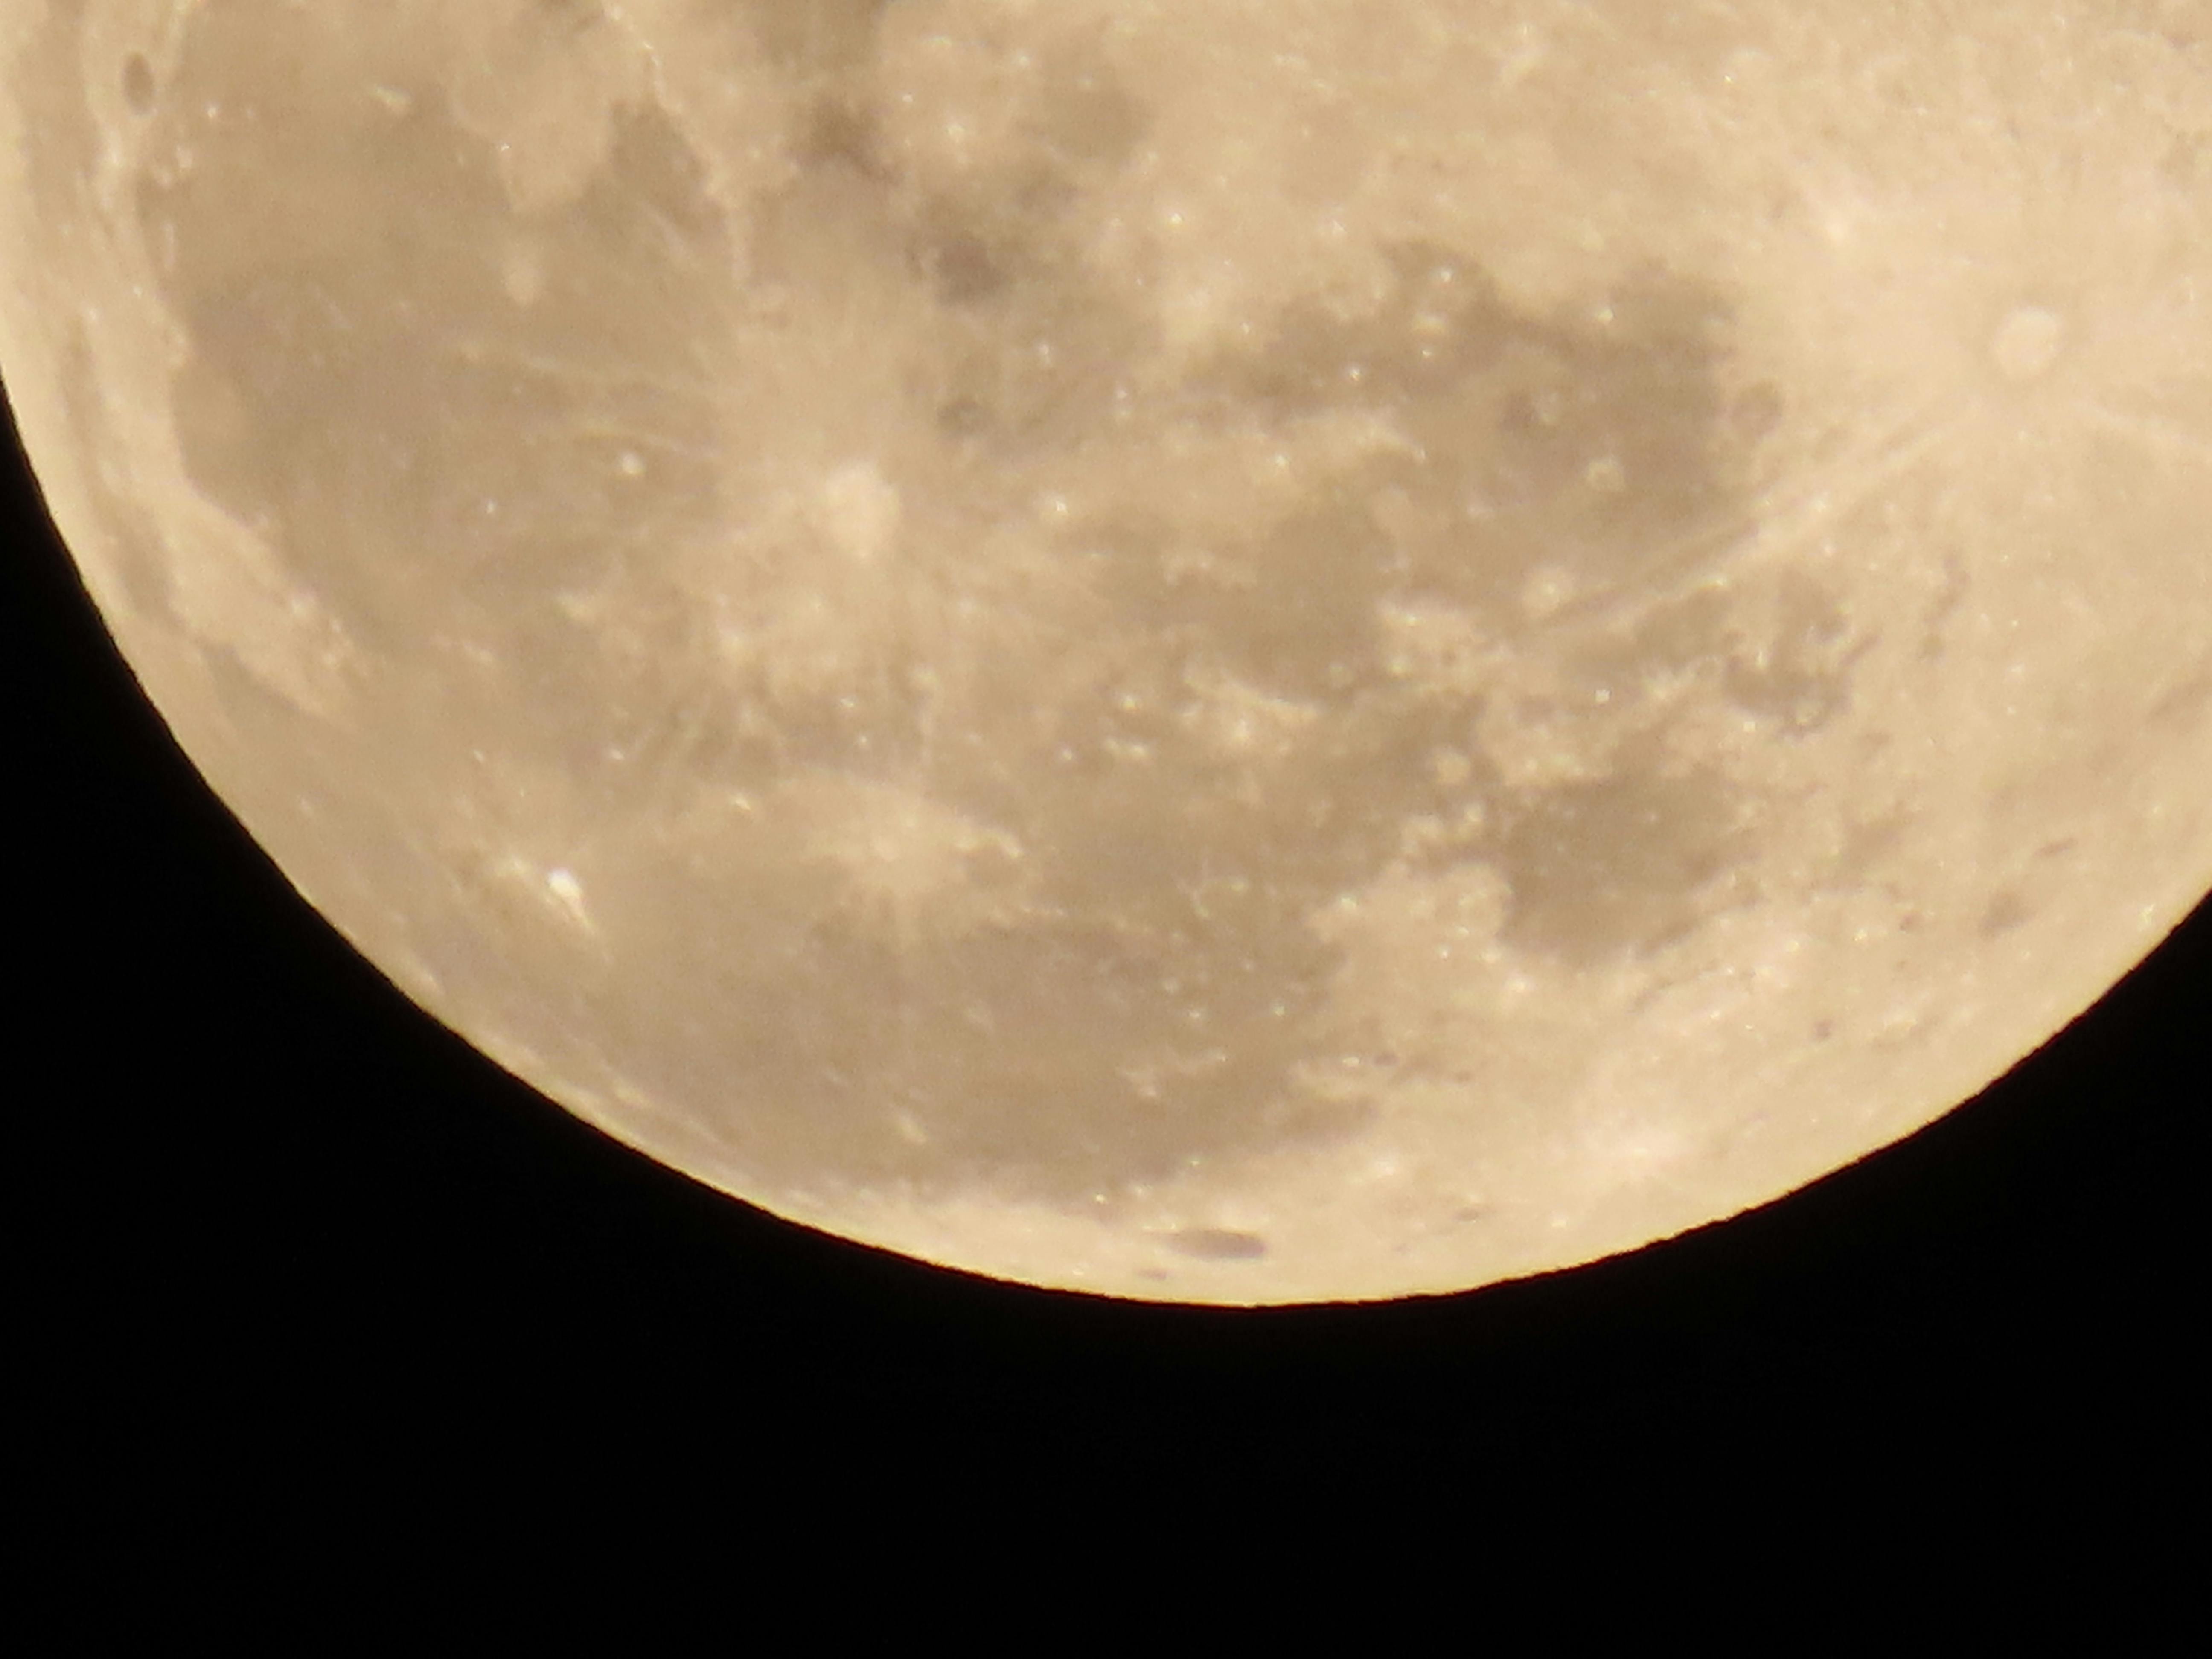 Free stock photo of full moon, moon